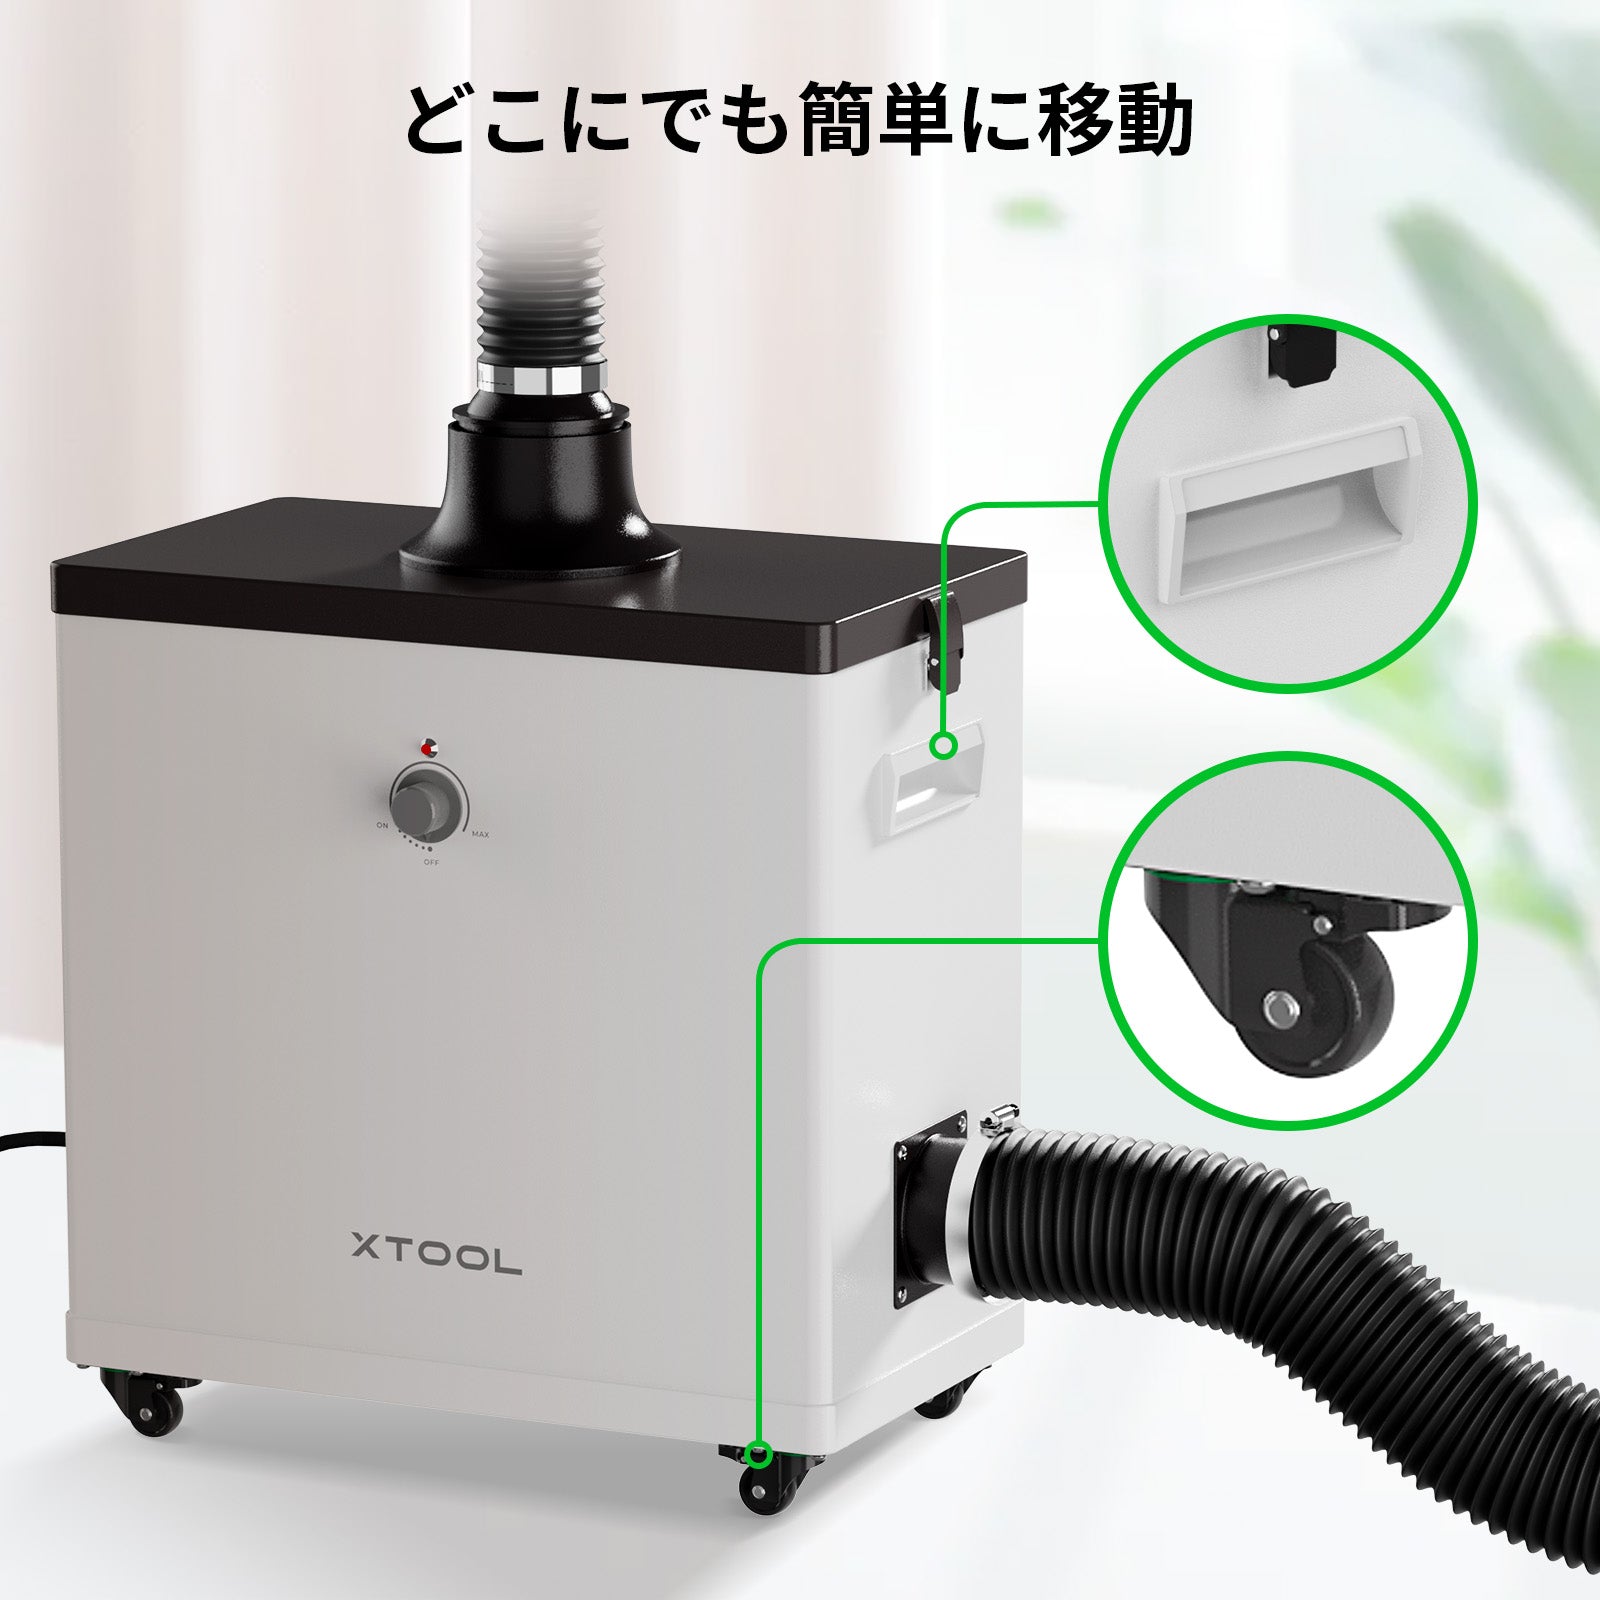 xTool Smoke Purifier M1 for Laser Engraver